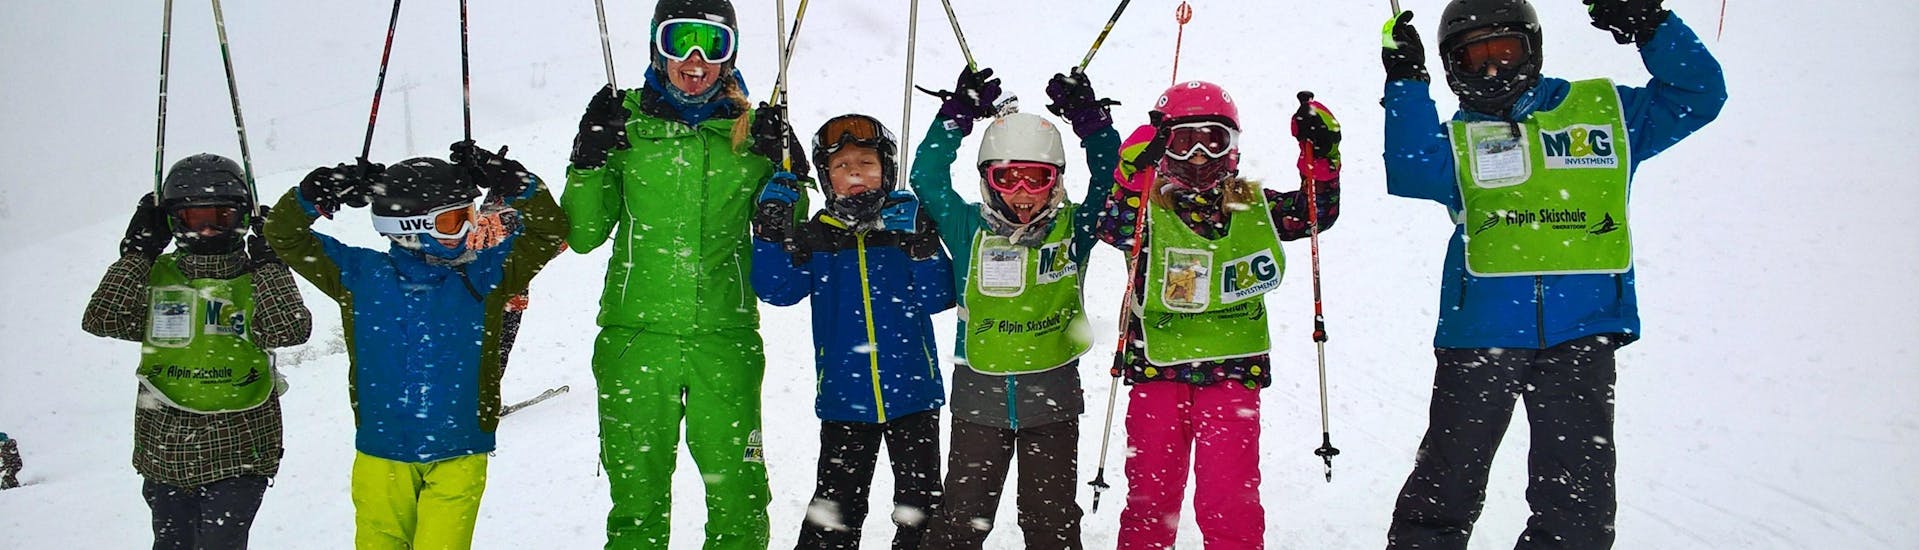 Een groep blije kinderen tijdens de Kids Ski Lessons (9-16 jaar) - Gevorderden met hun skileraar van de skischool Alpin Skischule Oberstdorf.